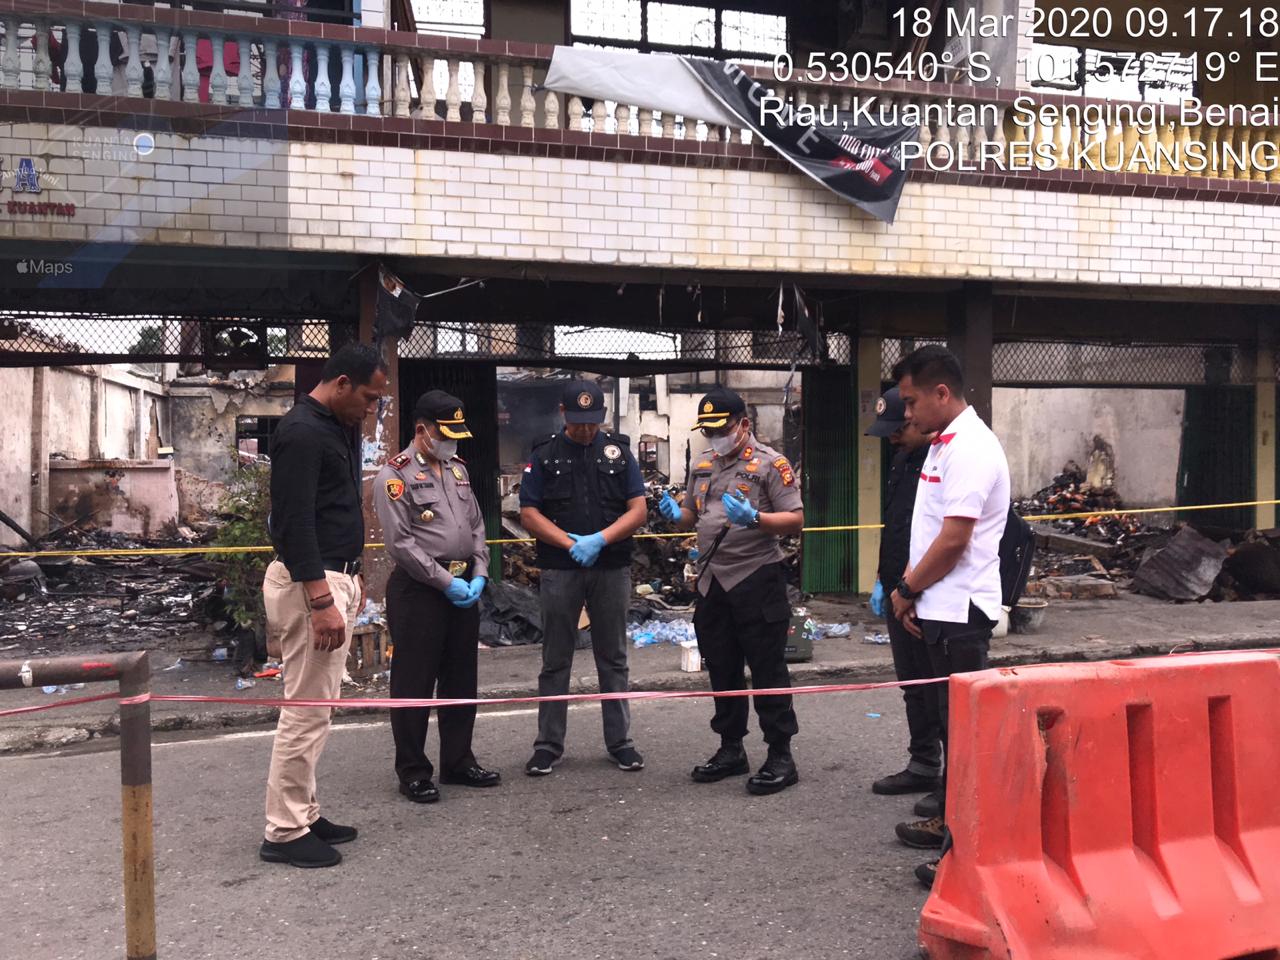 Guna menyelidiki penyebab Kebakaran, Polres Kuansing hadirkan Puslabfor Cabang Medan untuk lakukan Olah TKP Kebakaran.